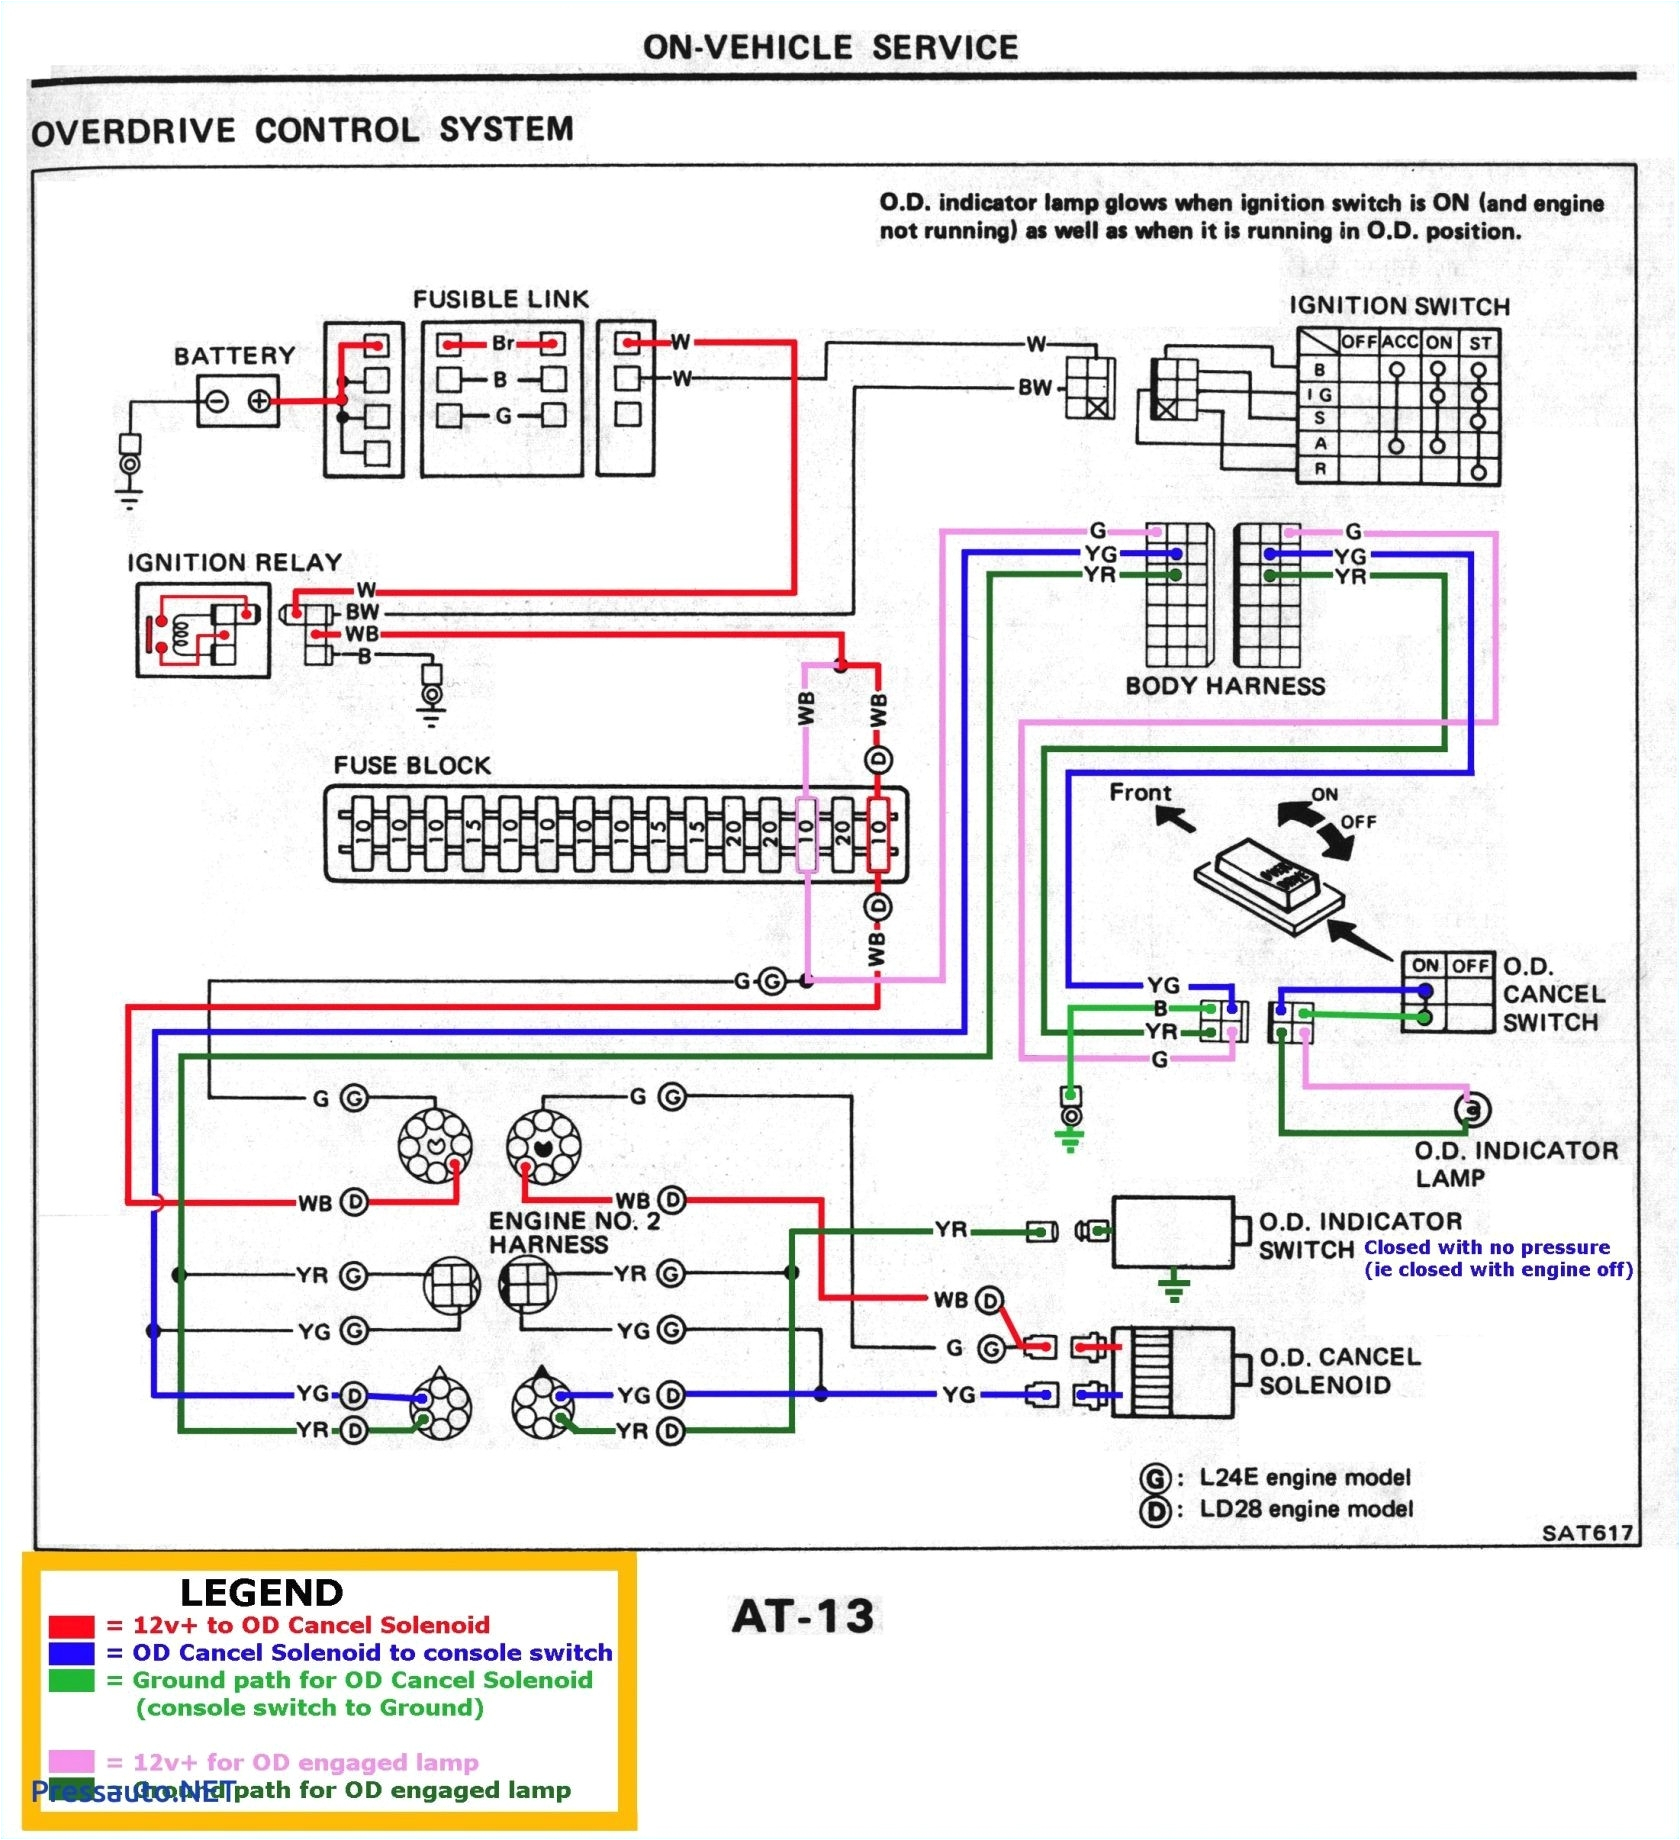 taskmaster wiring diagrams wiring diagram data jpg